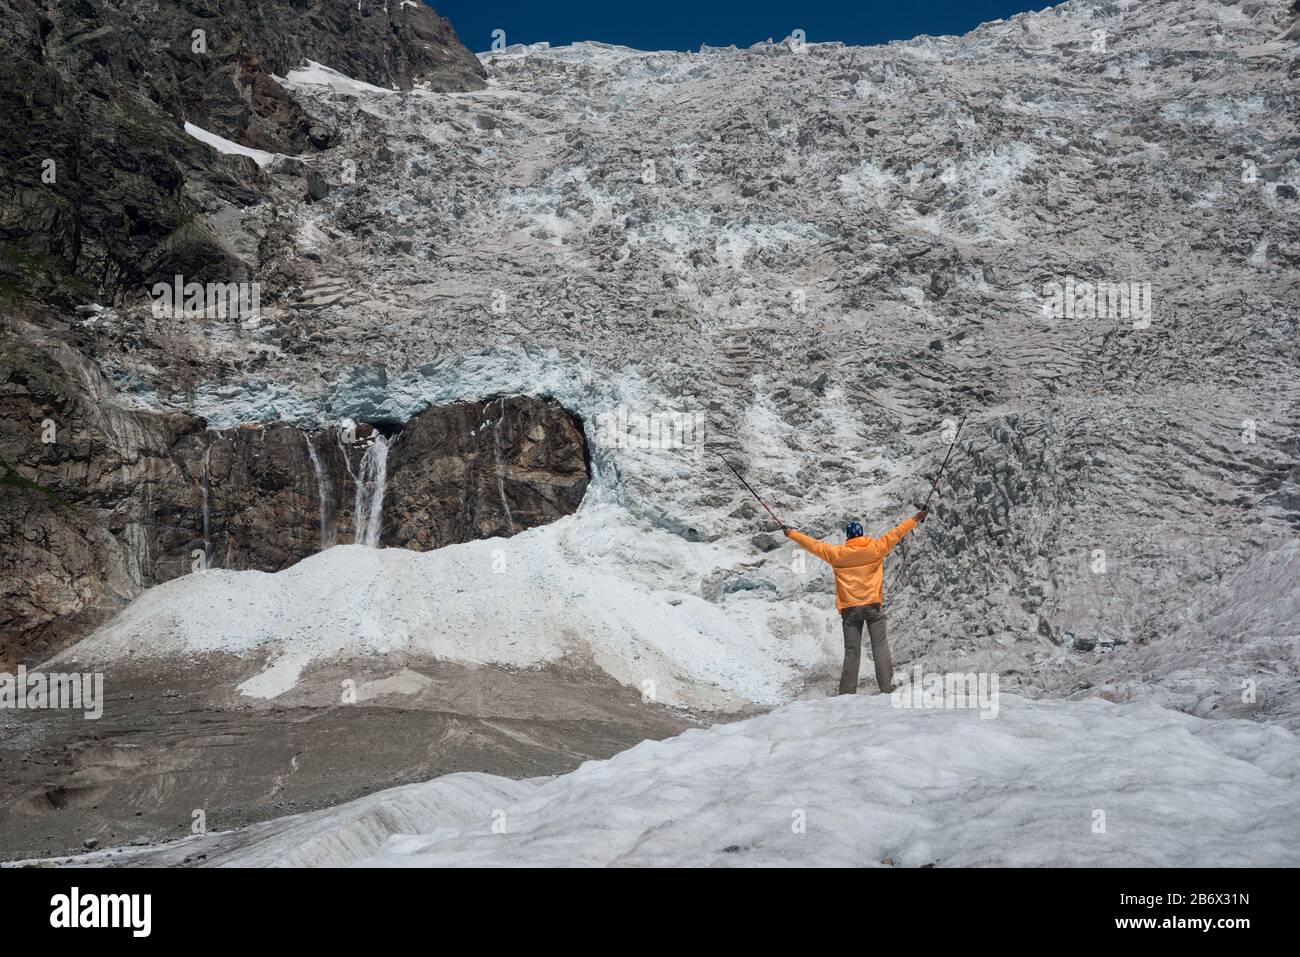 Touristen, die mit orangefarbenem Windschutzschalter bekleidet sind, blicken auf den Adishi-Gletscher (auch Lardaad genannt). Der Tropfen dieses Eisfalles beträgt mehr als 1000 m. Stockfoto